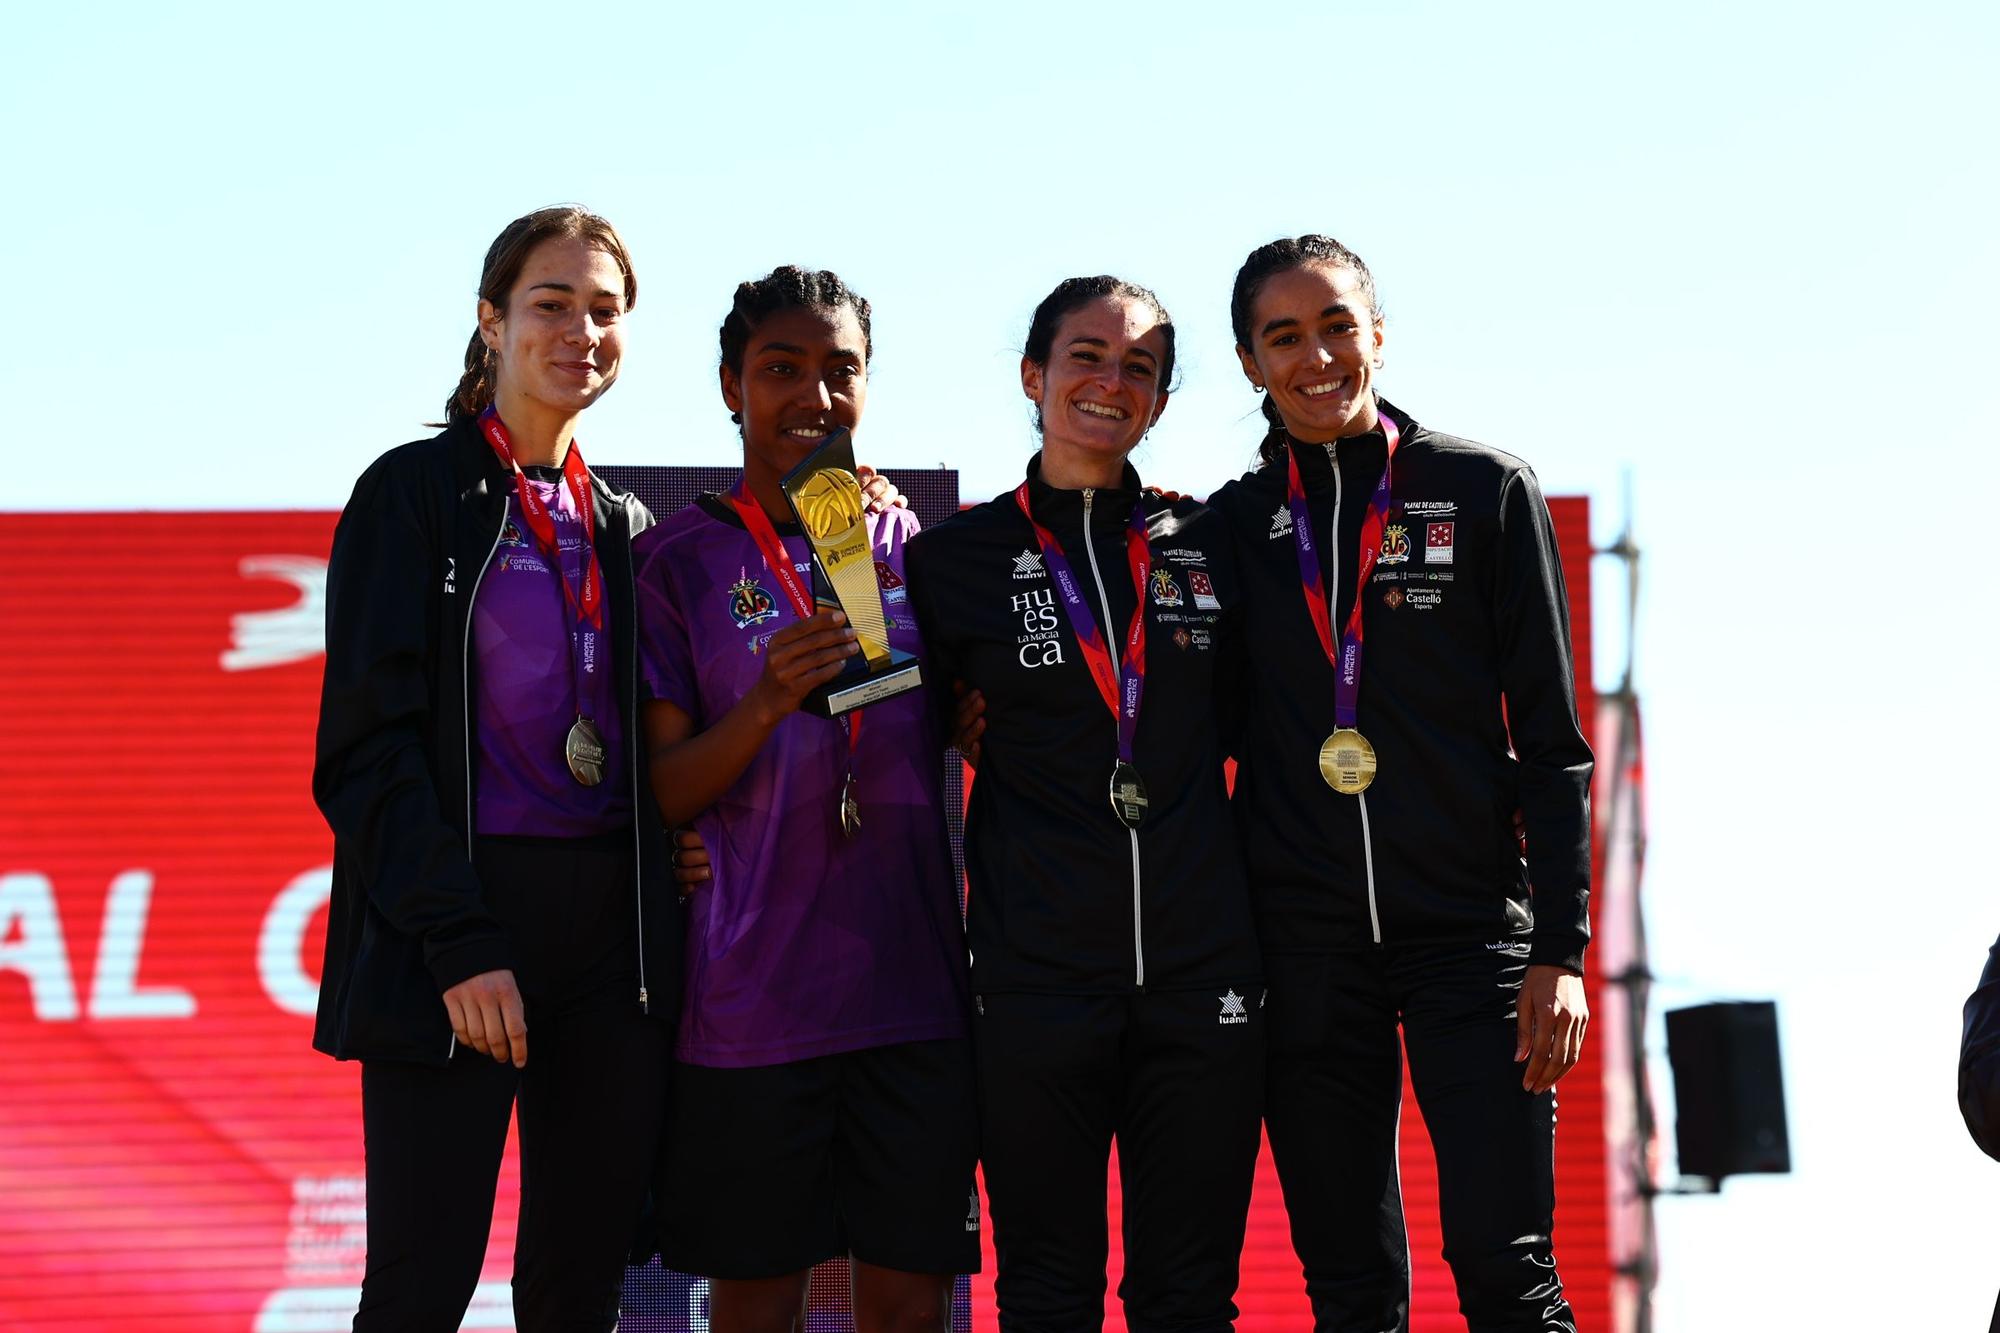 El equipo femenino del Playas de Castellón revalidó el título logrado el año pasado en Portugal.